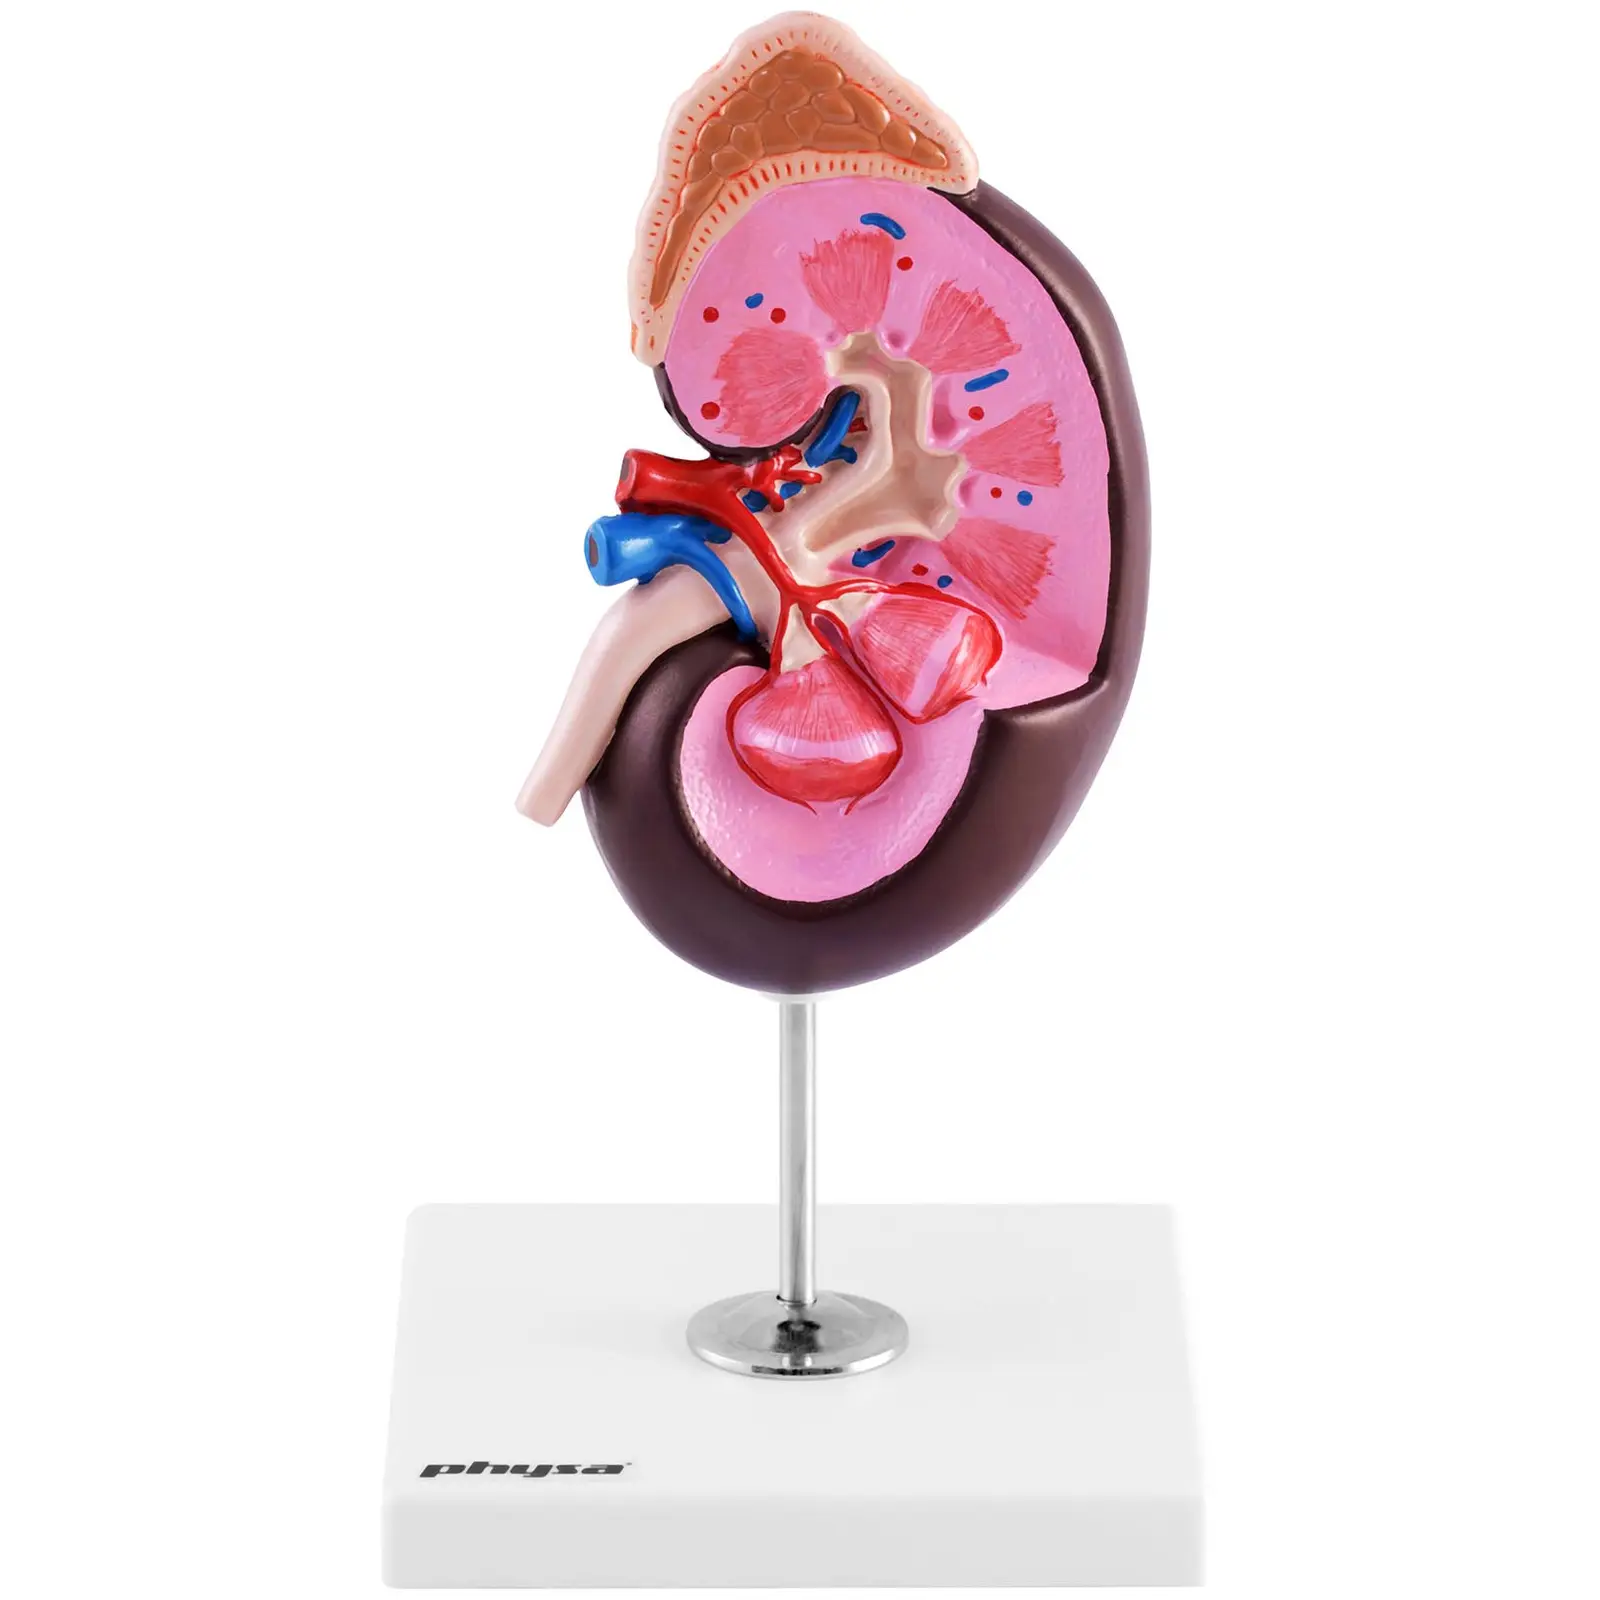 Maquette anatomique du rein humain - Agrandissement par un facteur de 1,5